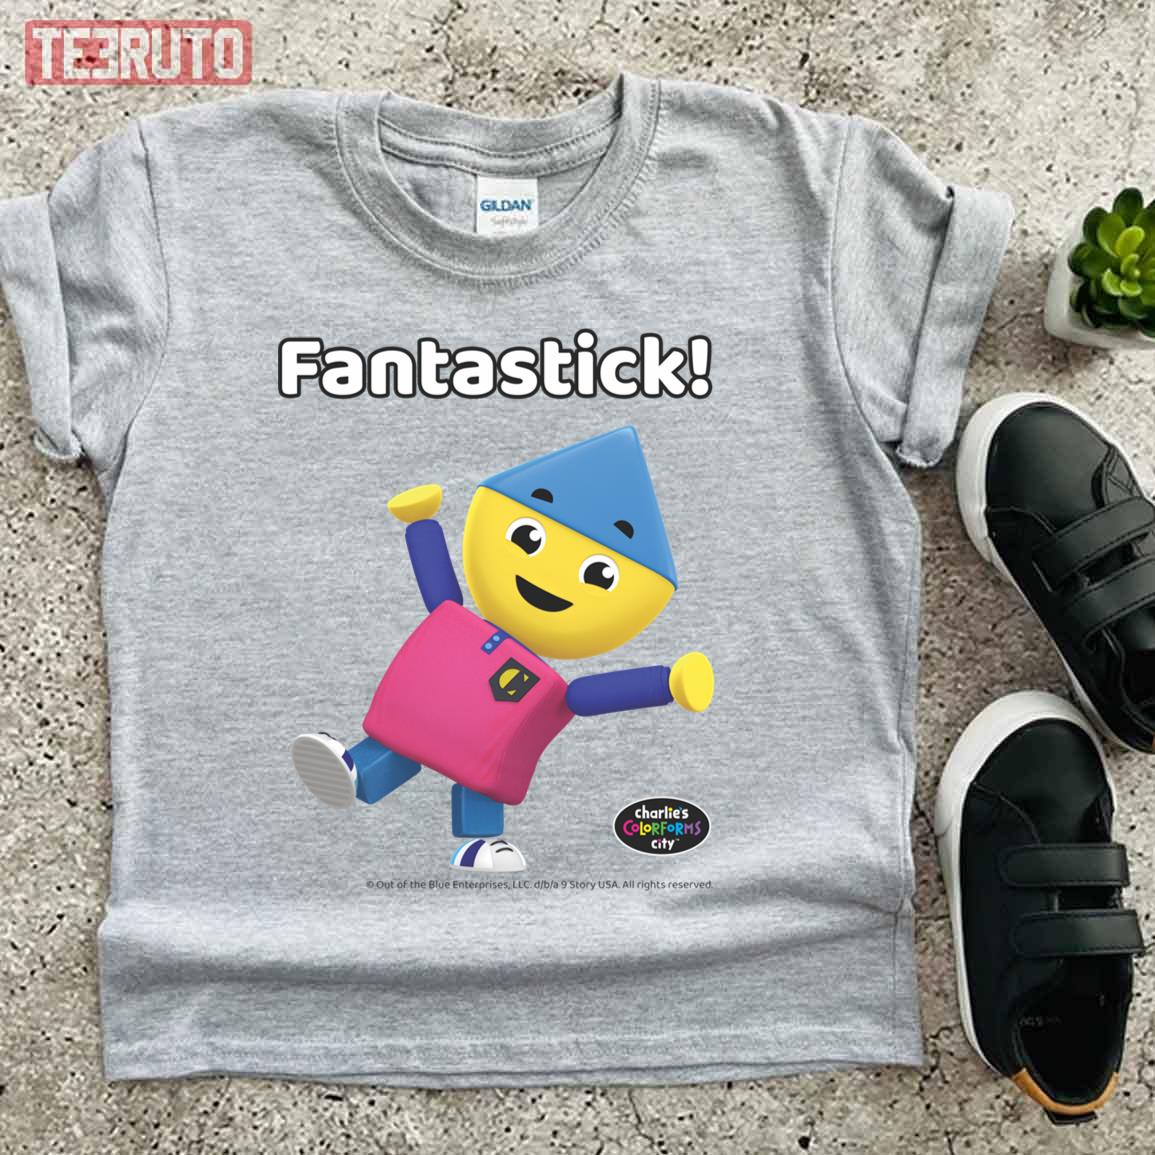 Fantastick Charlie's Colorforms City Unisex T-Shirt